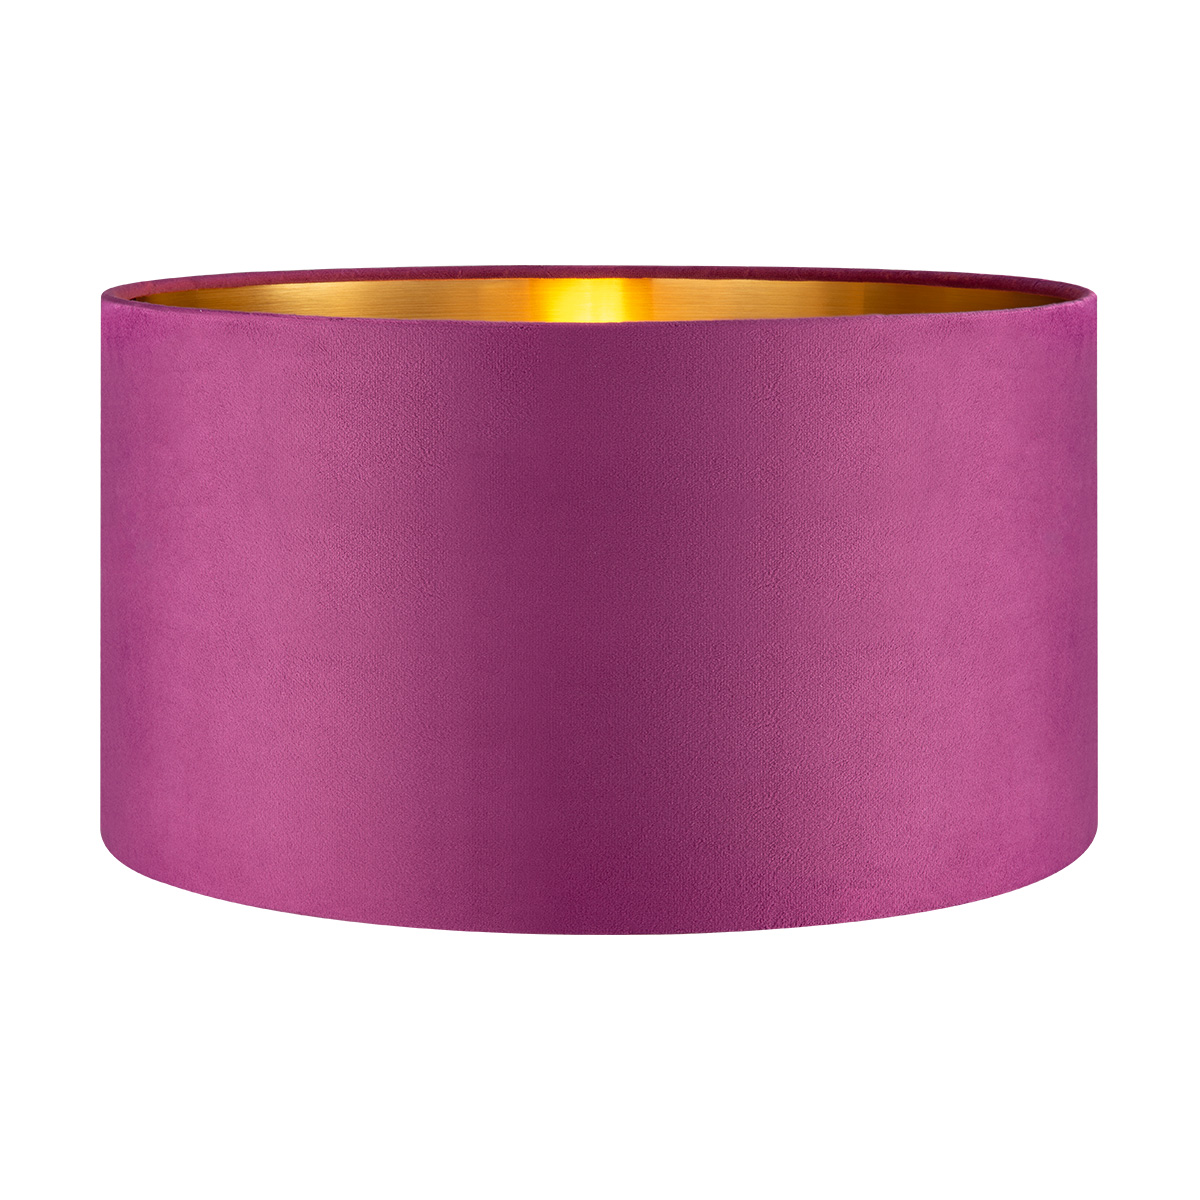 Tangla lighting - TLS7564-40PP - Lampshade - velvet - purple - diameter 40cm - E27